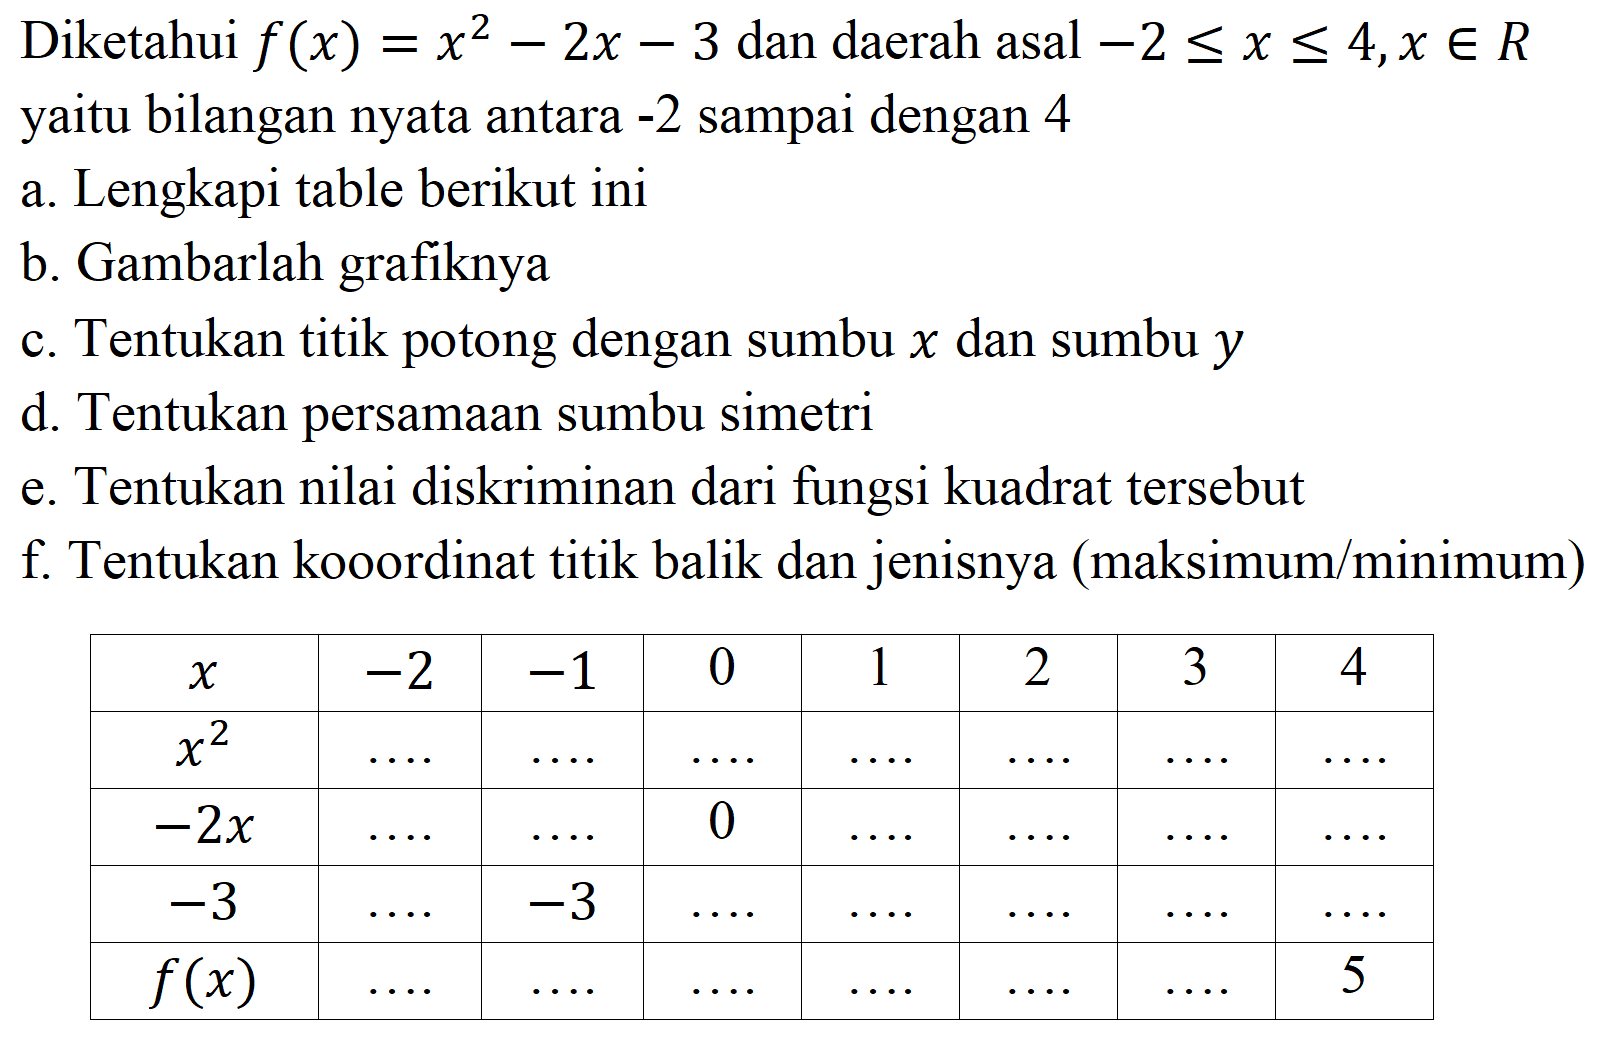 Diketahui  f(x)=x^(2)-2 x-3  dan daerah asal  -2 <= x <= 4, x in R  yaitu bilangan nyata antara  -2  sampai dengan 4
a. Lengkapi table berikut ini
b. Gambarlah grafiknya
c. Tentukan titik potong dengan sumbu  x  dan sumbu  y 
d. Tentukan persamaan sumbu simetri
e. Tentukan nilai diskriminan dari fungsi kuadrat tersebut
f. Tentukan kooordinat titik balik dan jenisnya (maksimum/minimum)

 x    -2    -1   0  1  2  3  4 
 x^(2)    ..    ..    ...    ..    ...    ..    ...  
 -2 x    ..    ..   0   ...    ...    ..    ...  
 -3    ..    -3    ...    ..    ..    ..    ...  
 f(x)    ..    ..    ..    ..    ..    ..   5 

